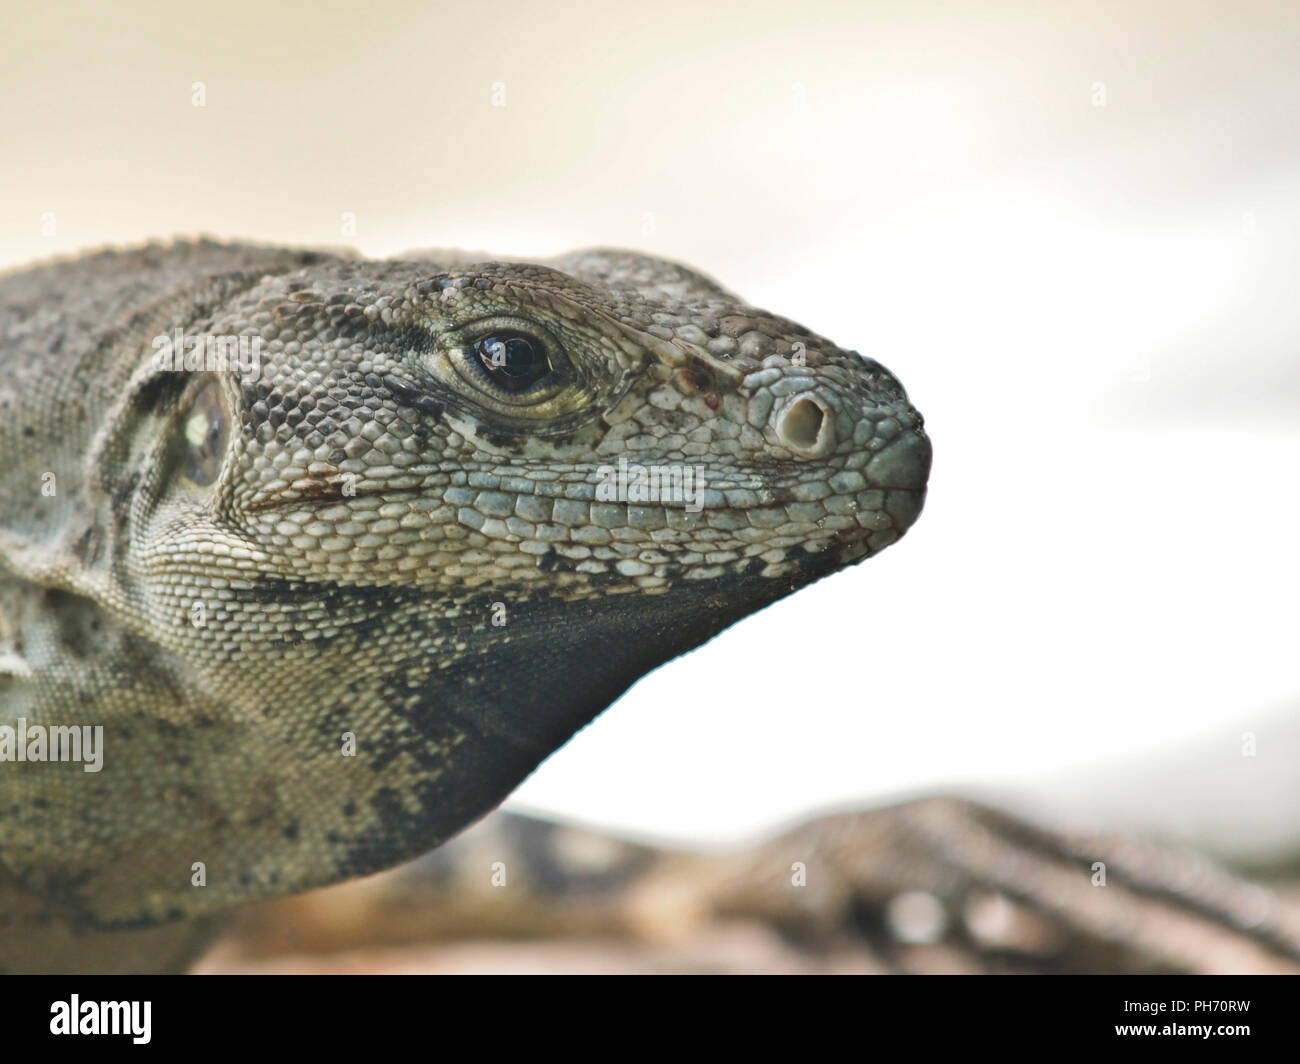 Iguana in Cozumel, mexico wildlife Stock Photo - Alamy